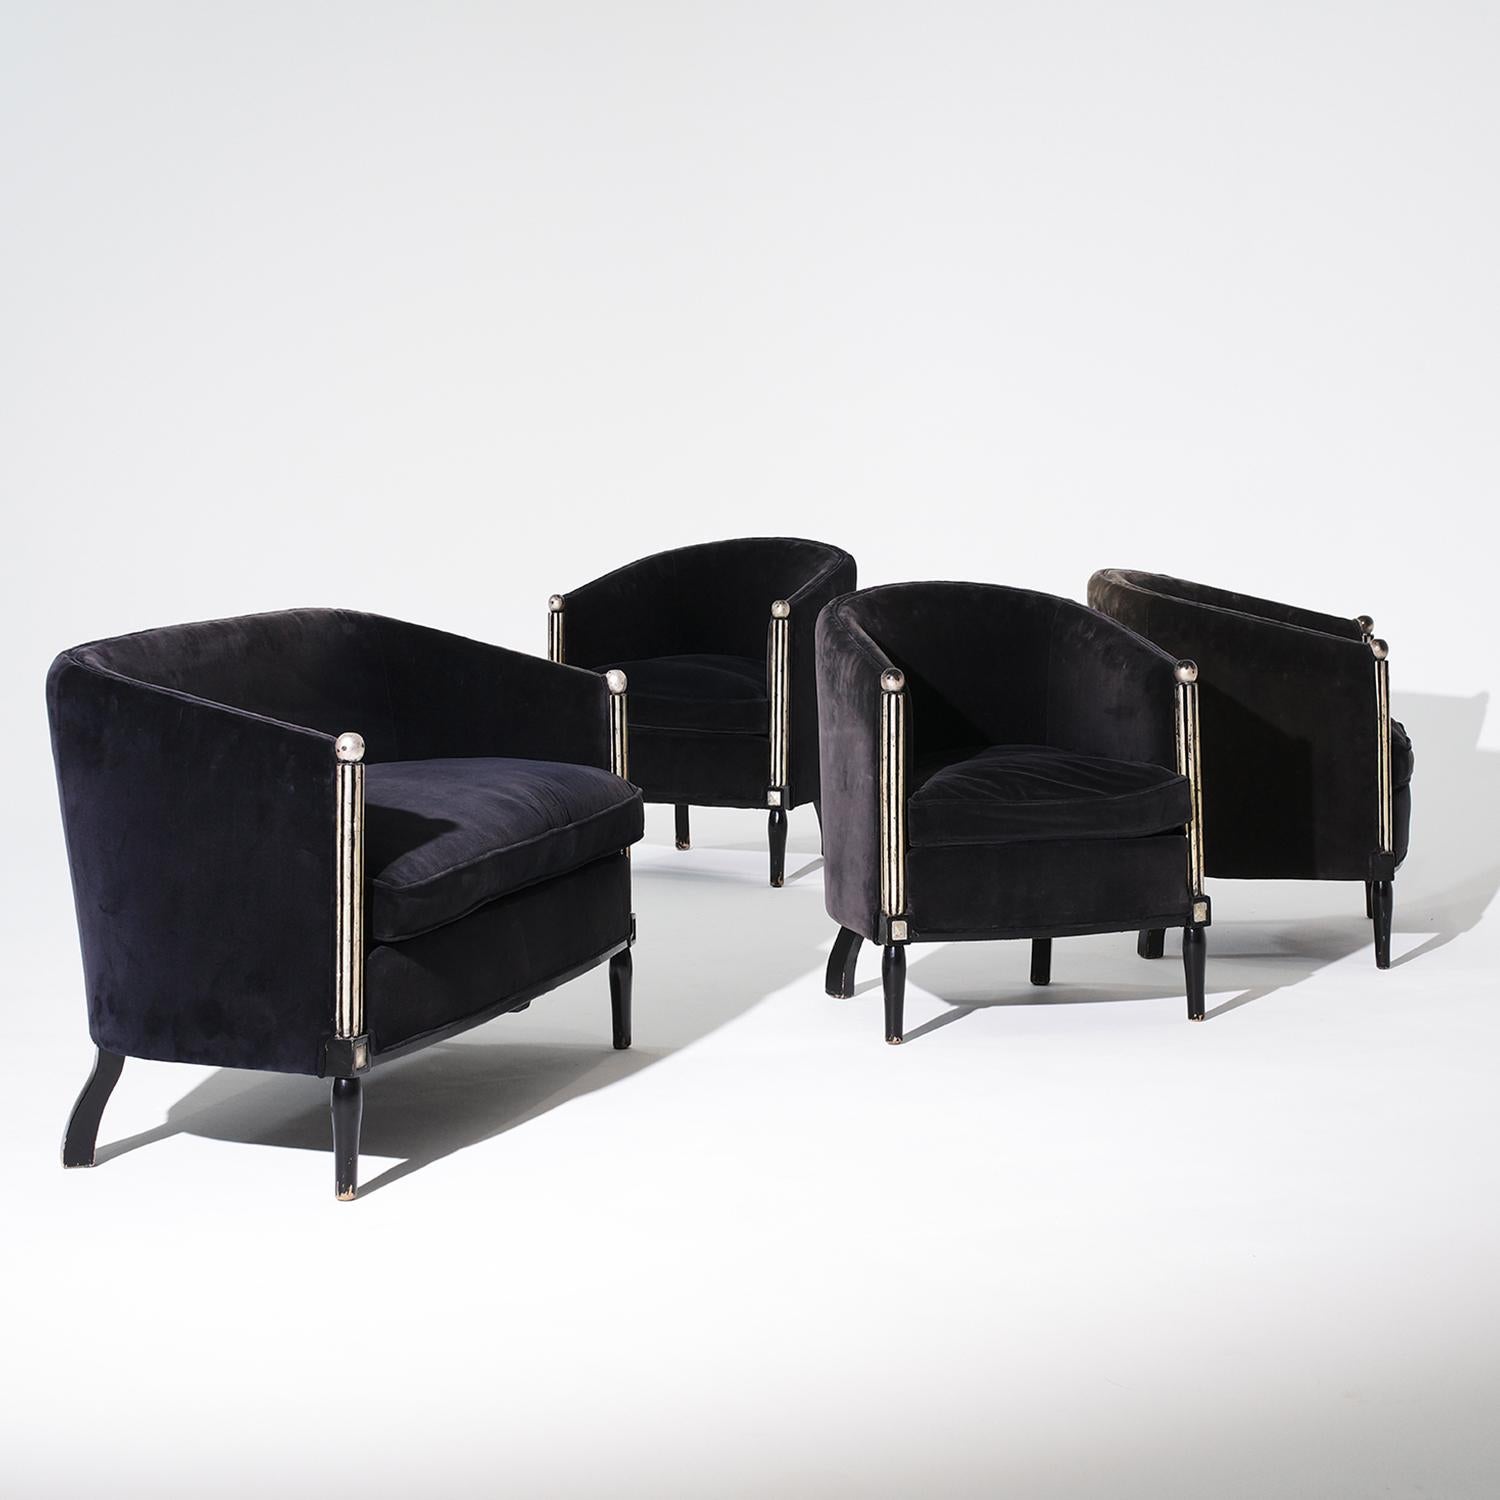 Eine Reihe von drei Vintage Französisch Art Deco fauteuils und Sofa, in gutem Zustand. Die Stühle und das Sofa sind aus handgeschnitztem Birkenholz gefertigt und mit schwarzem Samtstoff sowie silberfarbenem, ebonisiertem Hochglanz poliertem Finish